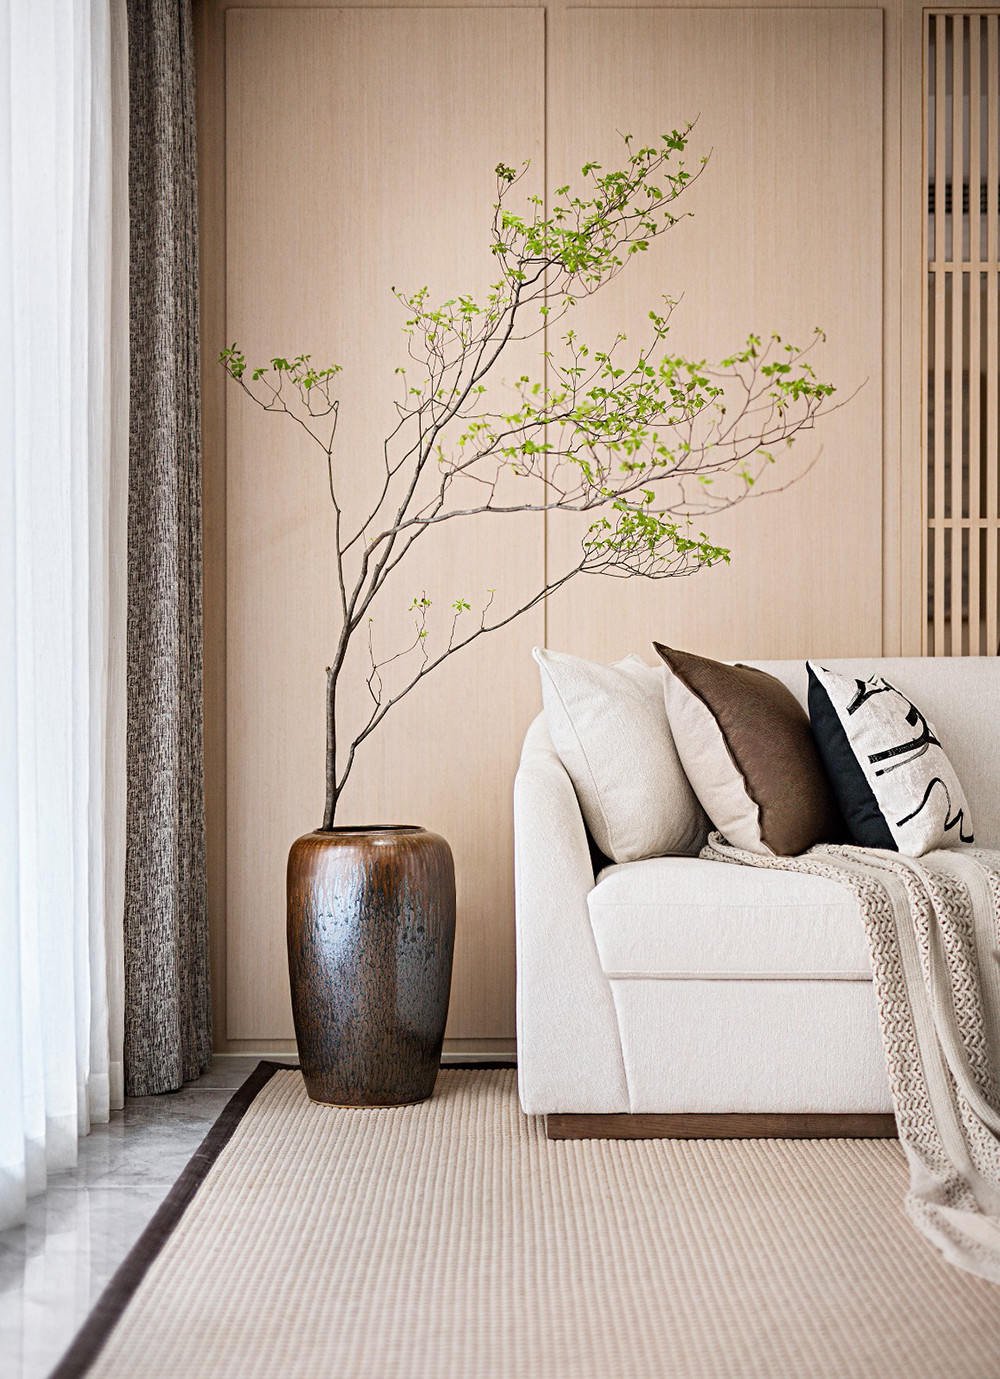 311平米日式风格三室客厅装修效果图，沙发创意设计图